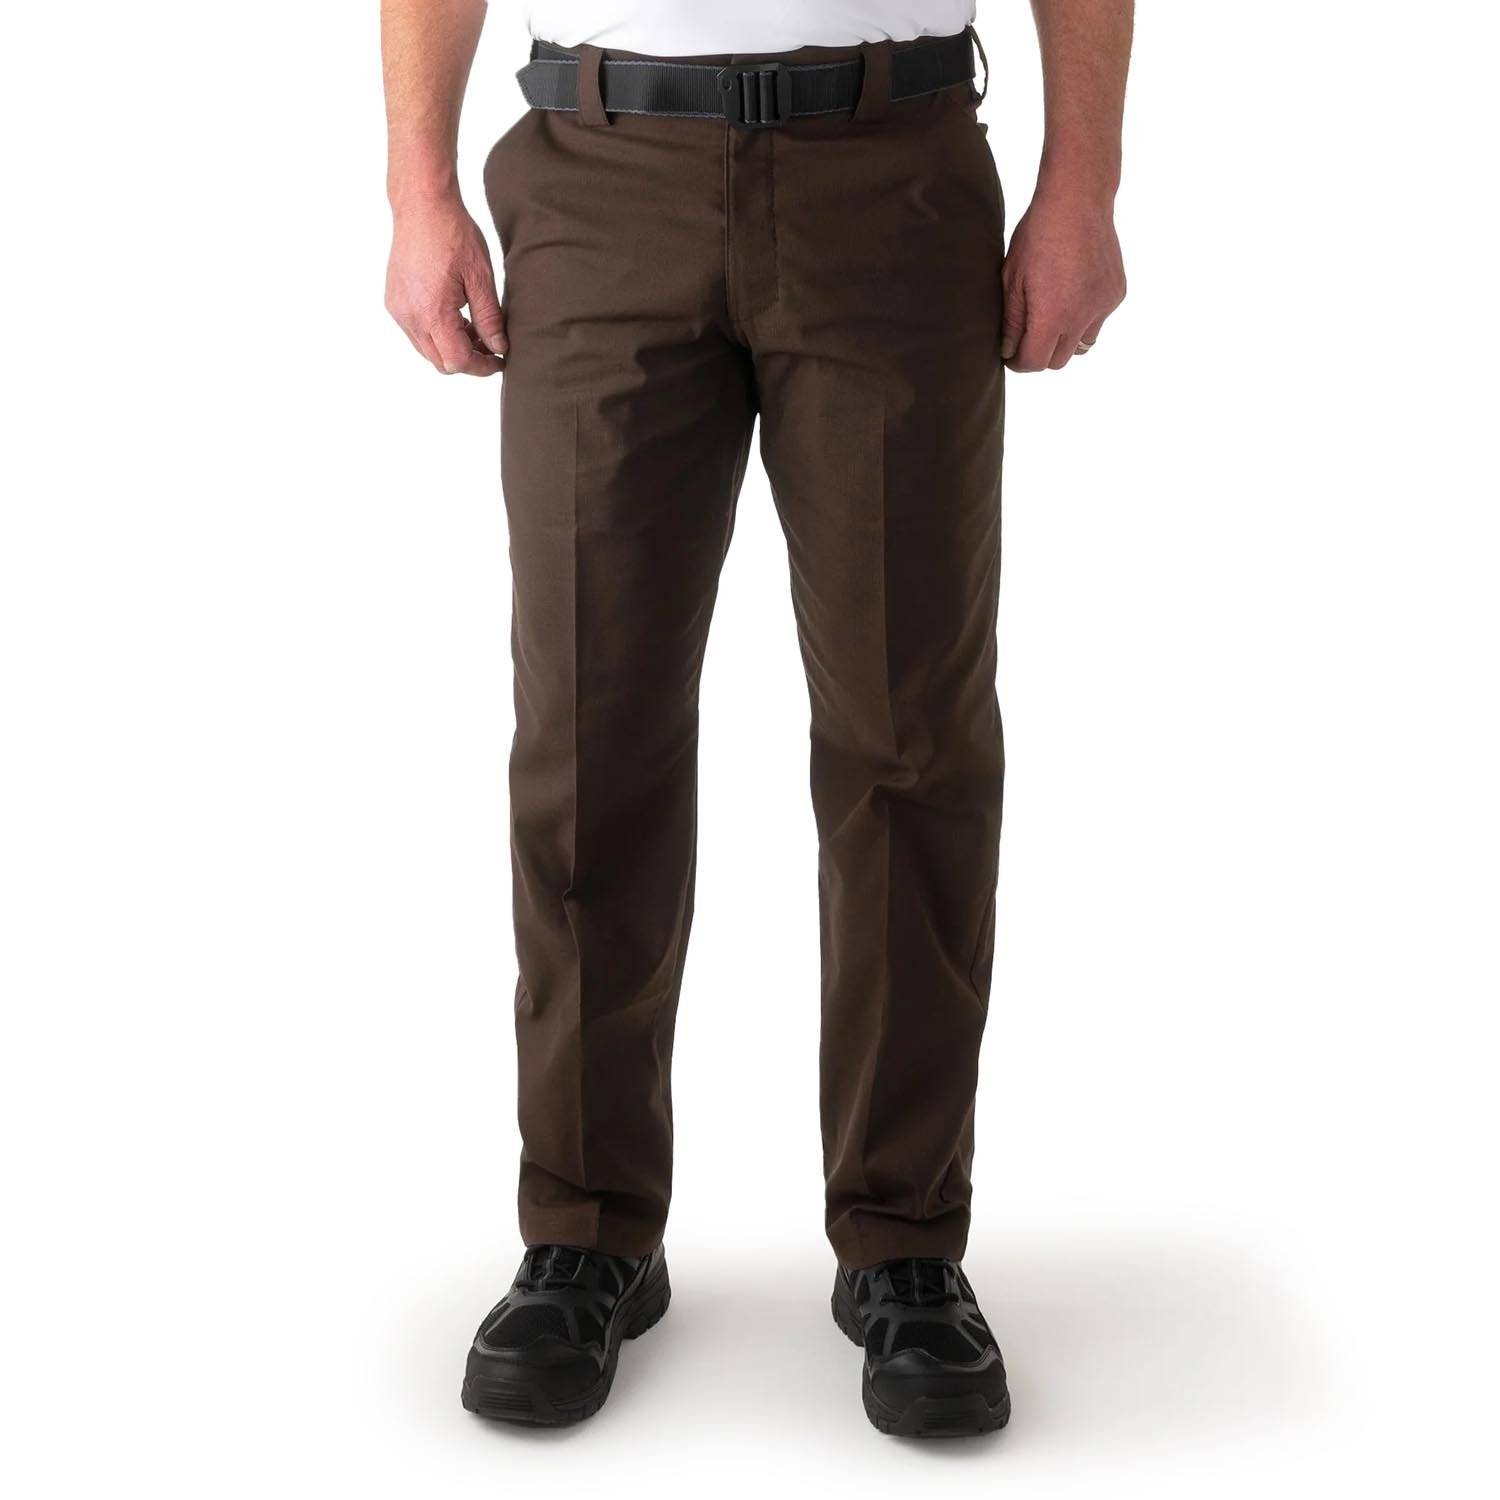 First Tactical Men's V2 Pro Duty Uniform Pants